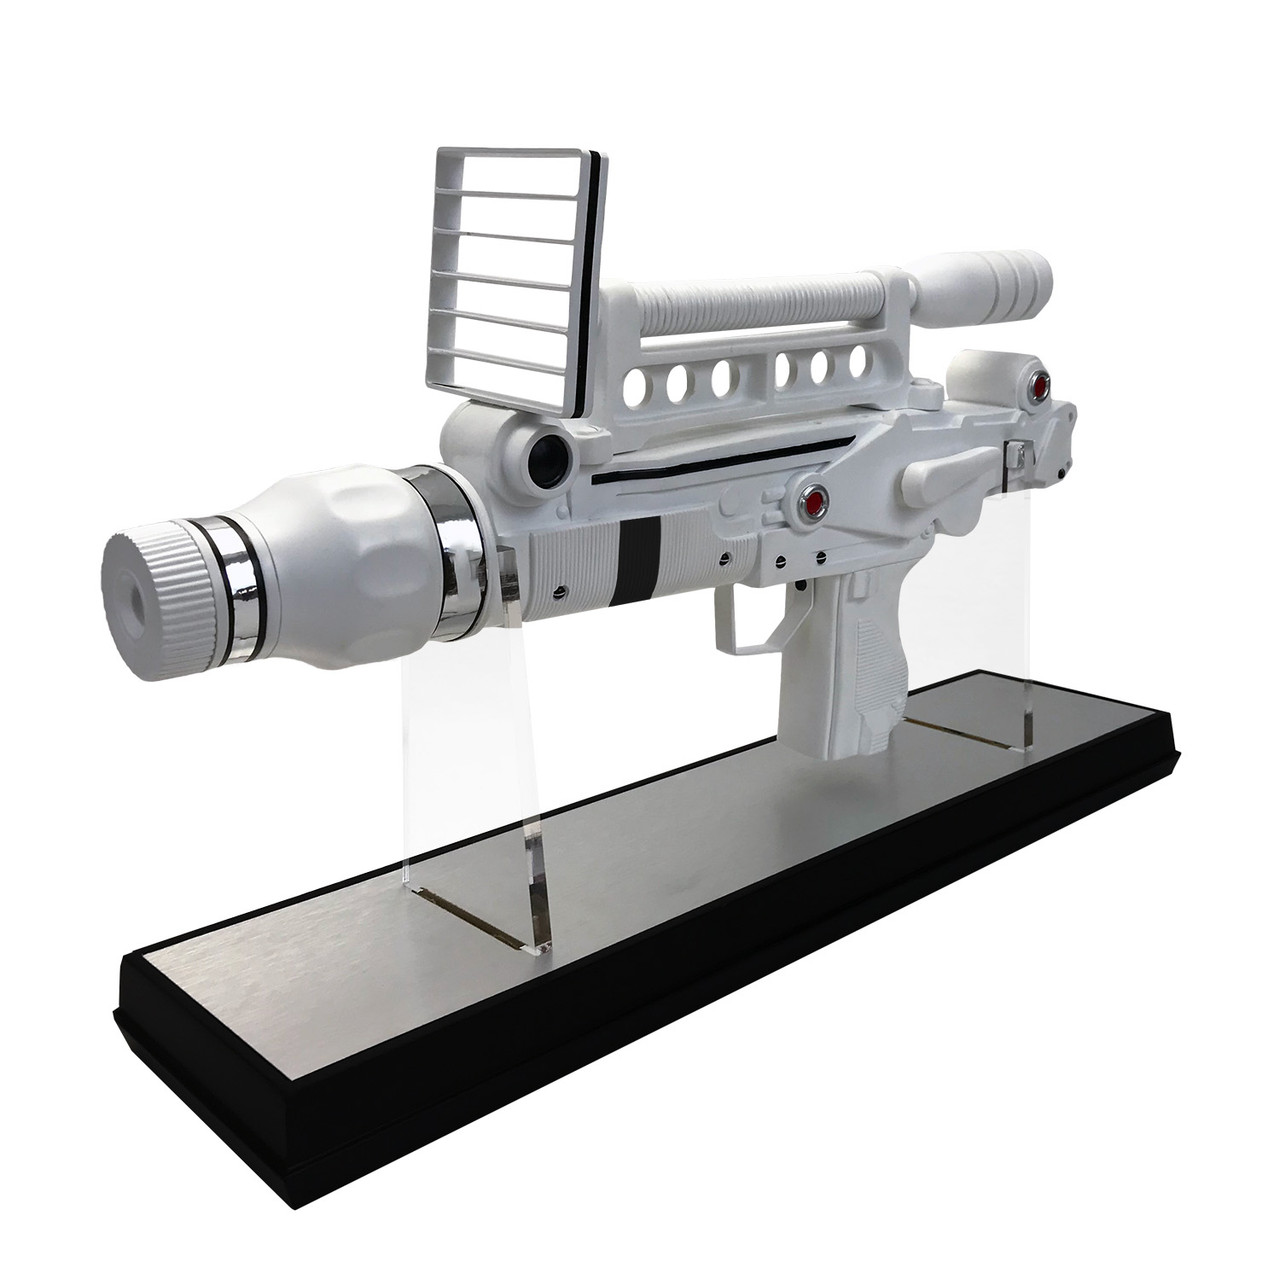 Factory Entertainment Moonraker Laser Gun 1:1 Scale Prop Replica 408885 4